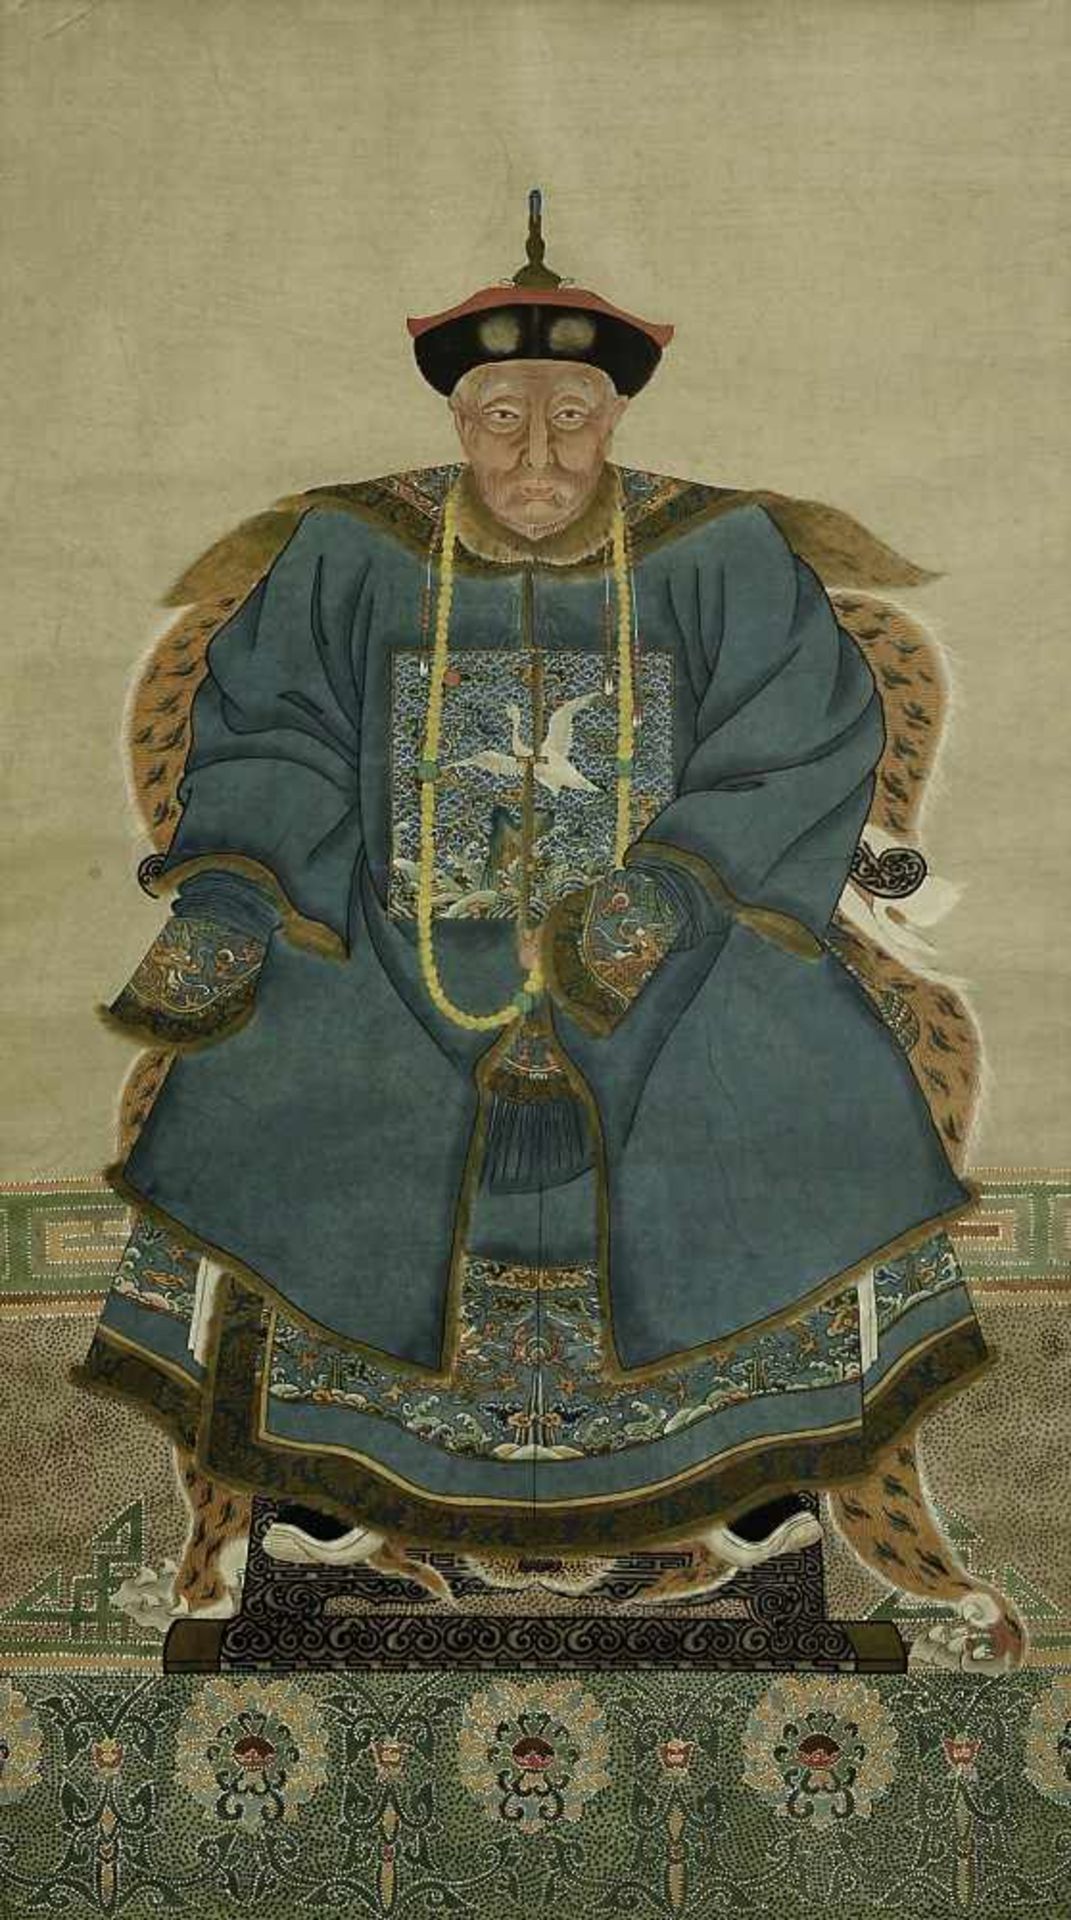 Ahnenportrait: Zivilbeamter China, wohl 19. Jh. Tusche und Farben auf Papier. Auf einem erhöhten